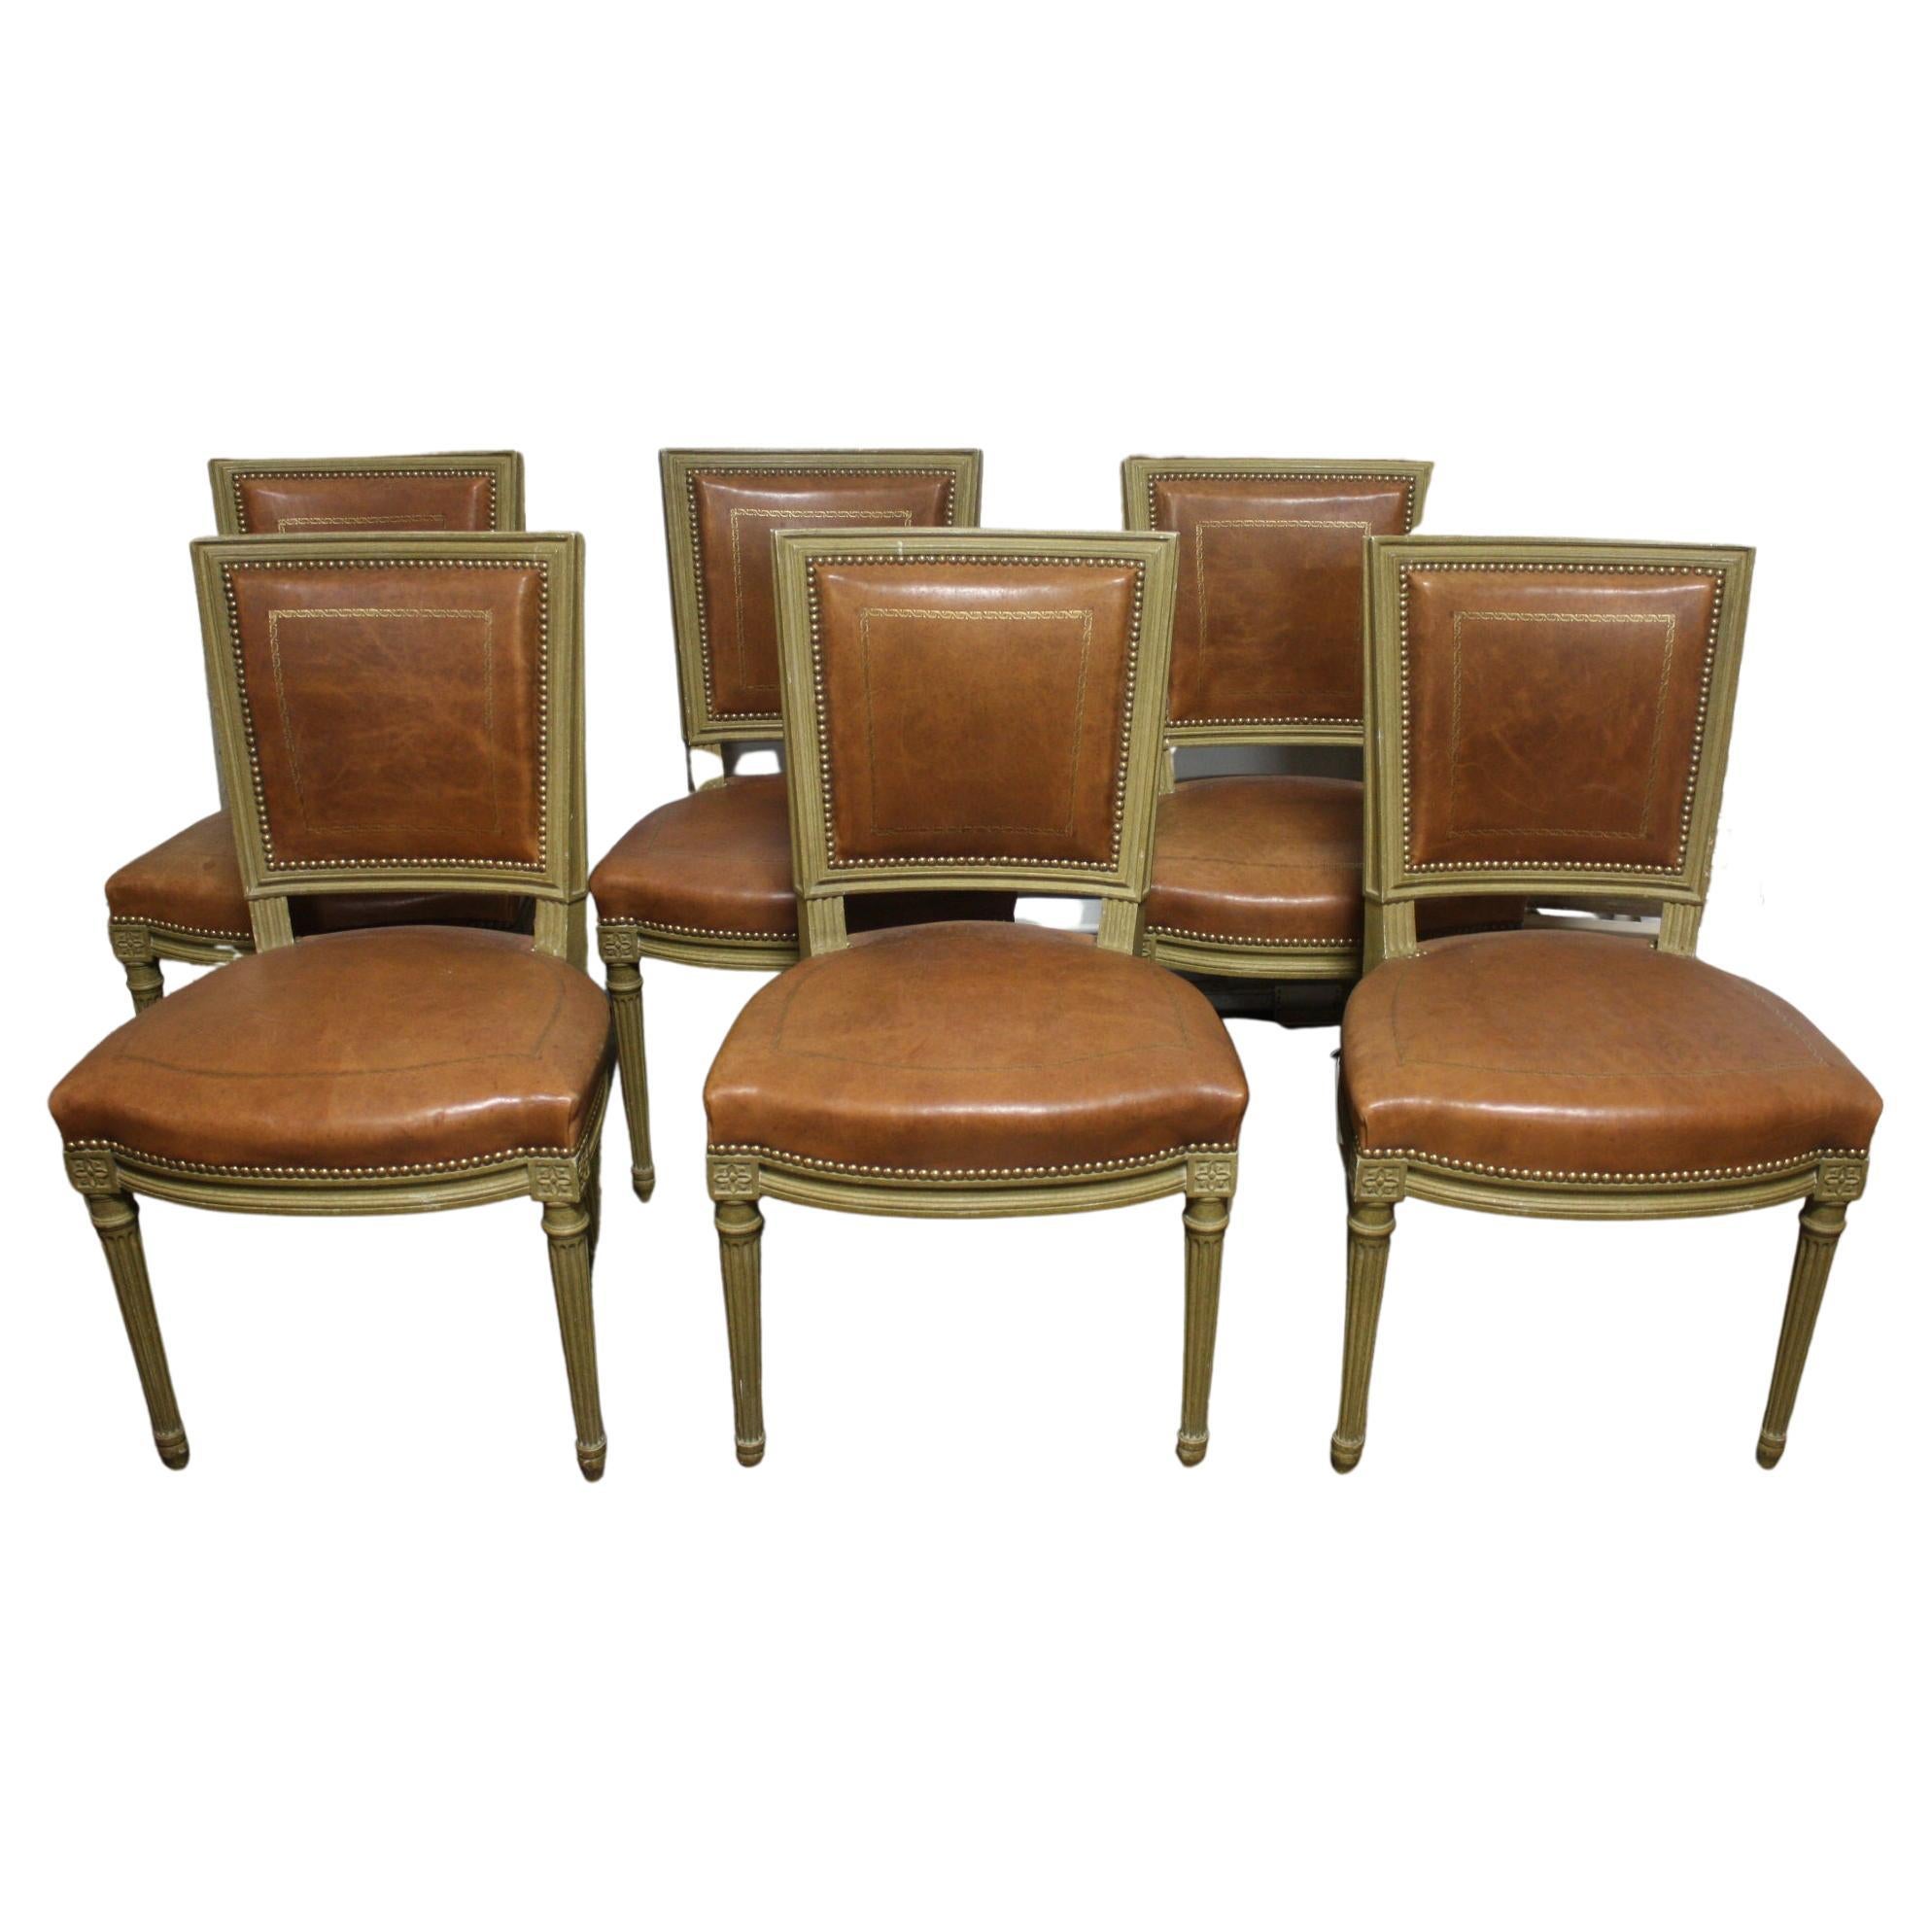 Ensemble de 6 chaises de salle à manger françaises du début du 20ème siècle signées Gouffe a Paris